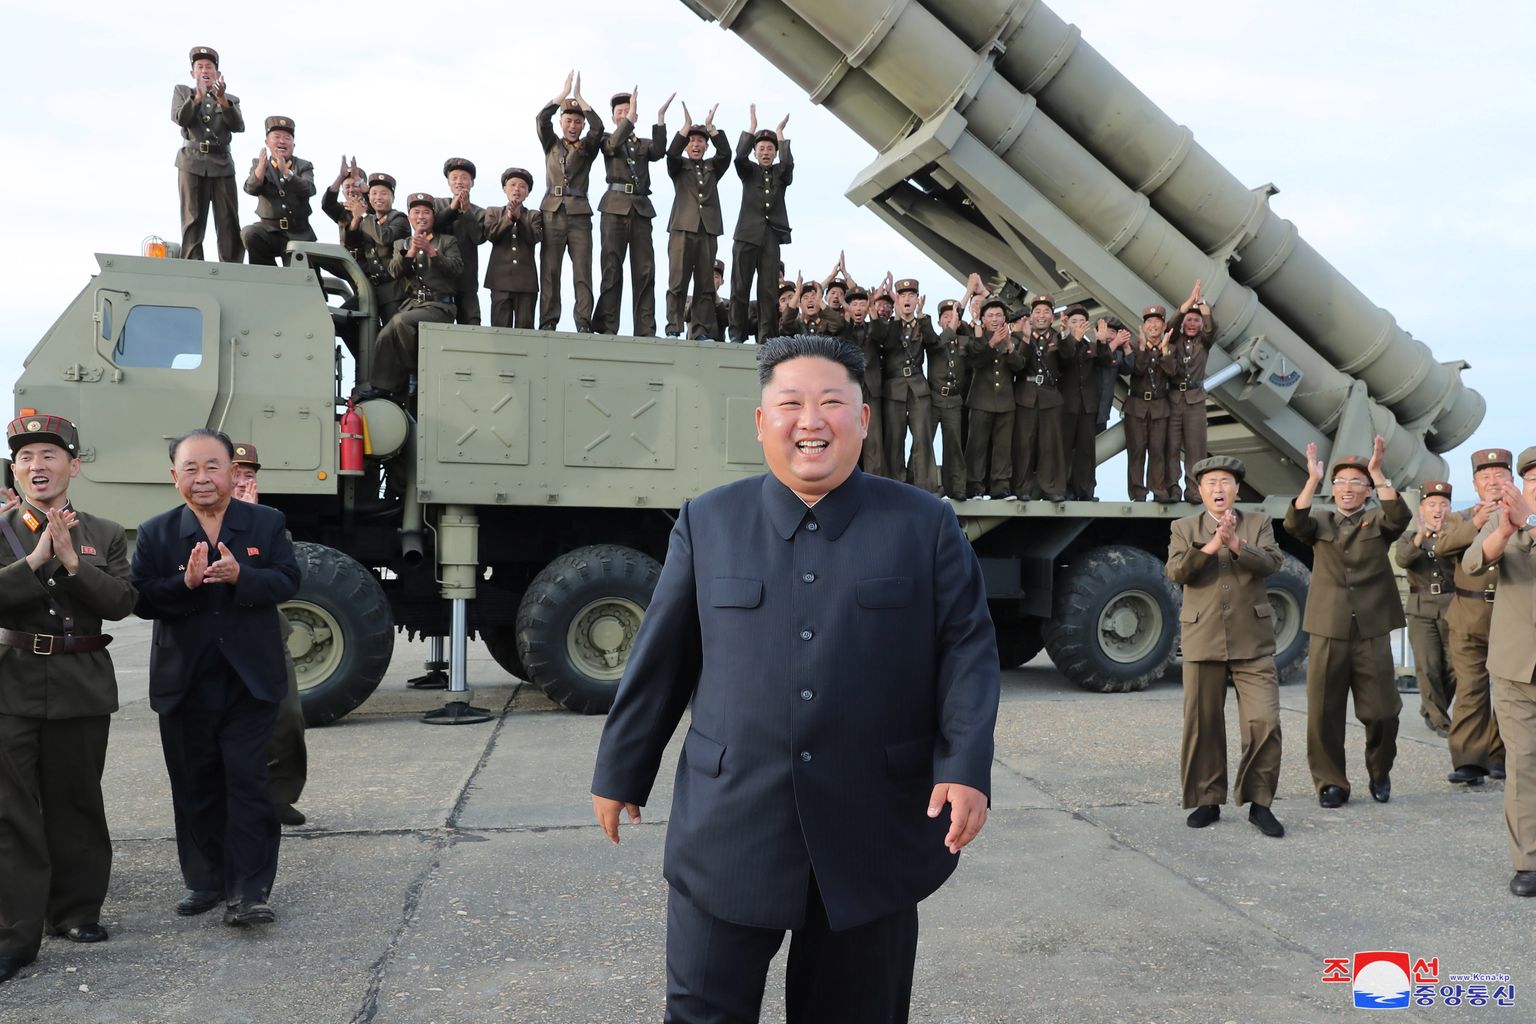 Ким Чен Ын на фоне вооружения. Иллюстративное фото